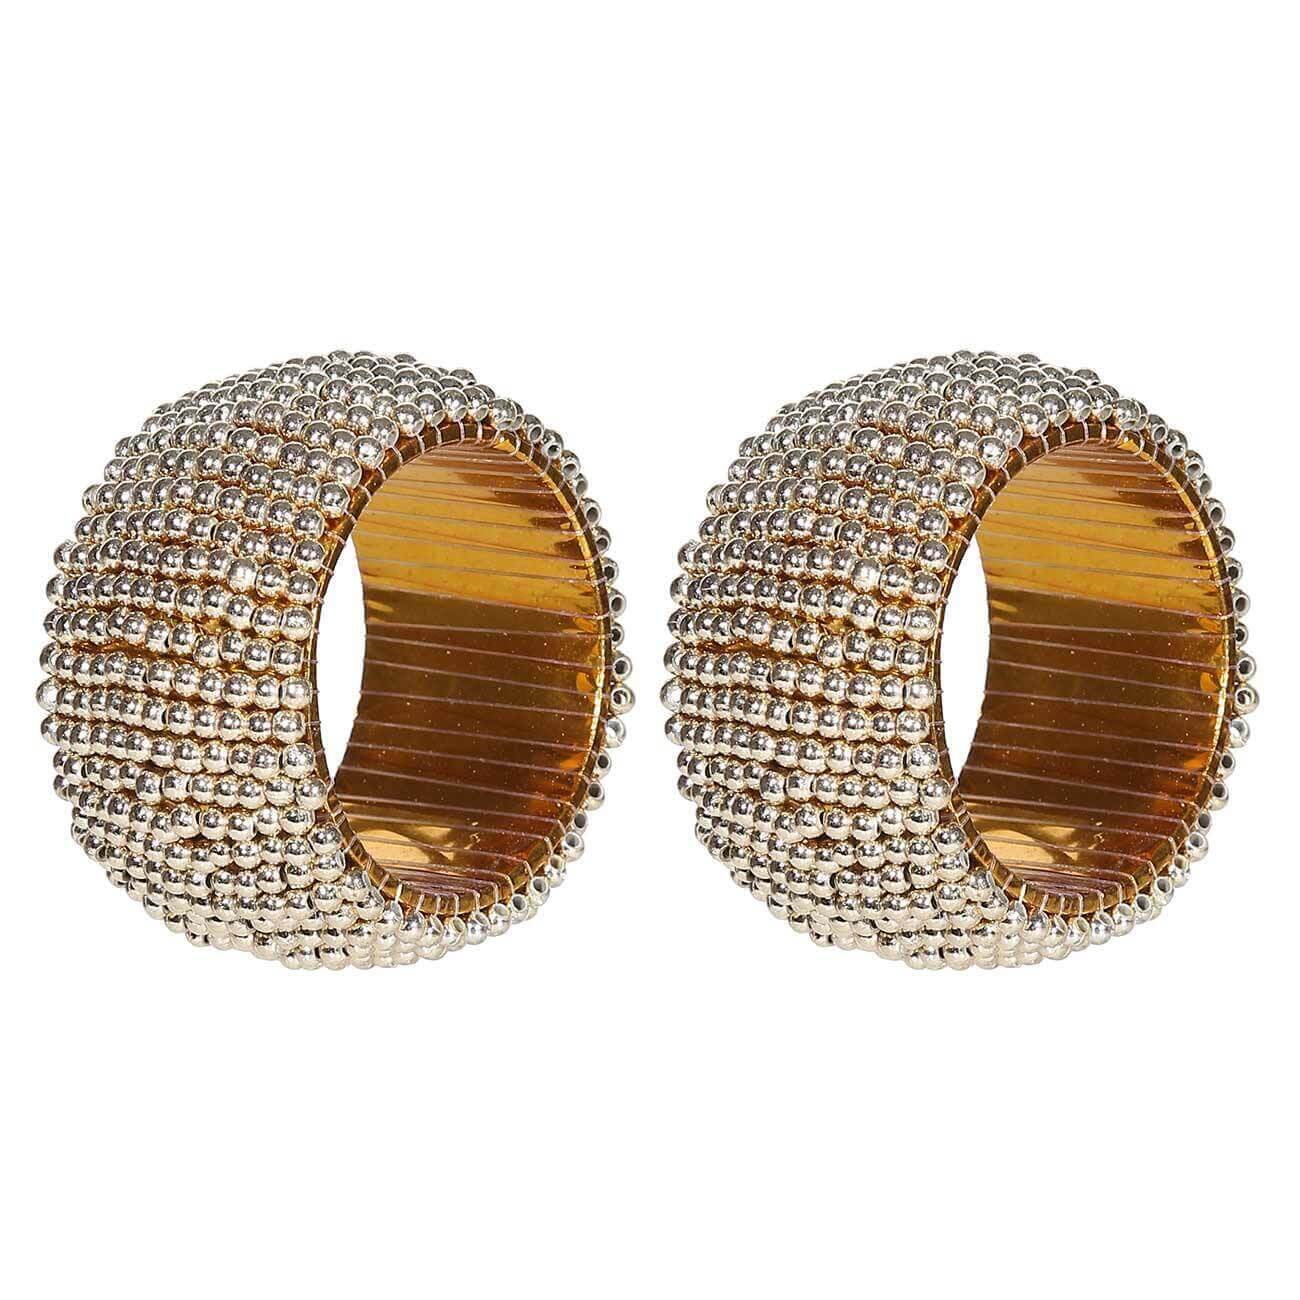 Кольцо для салфеток, 5 см, 2 шт, бисер, круглое, золотистое, Shiny beads творческое позолоченное имитационное инкрустированное круглое обручальное обручальное кольцо из аметиста